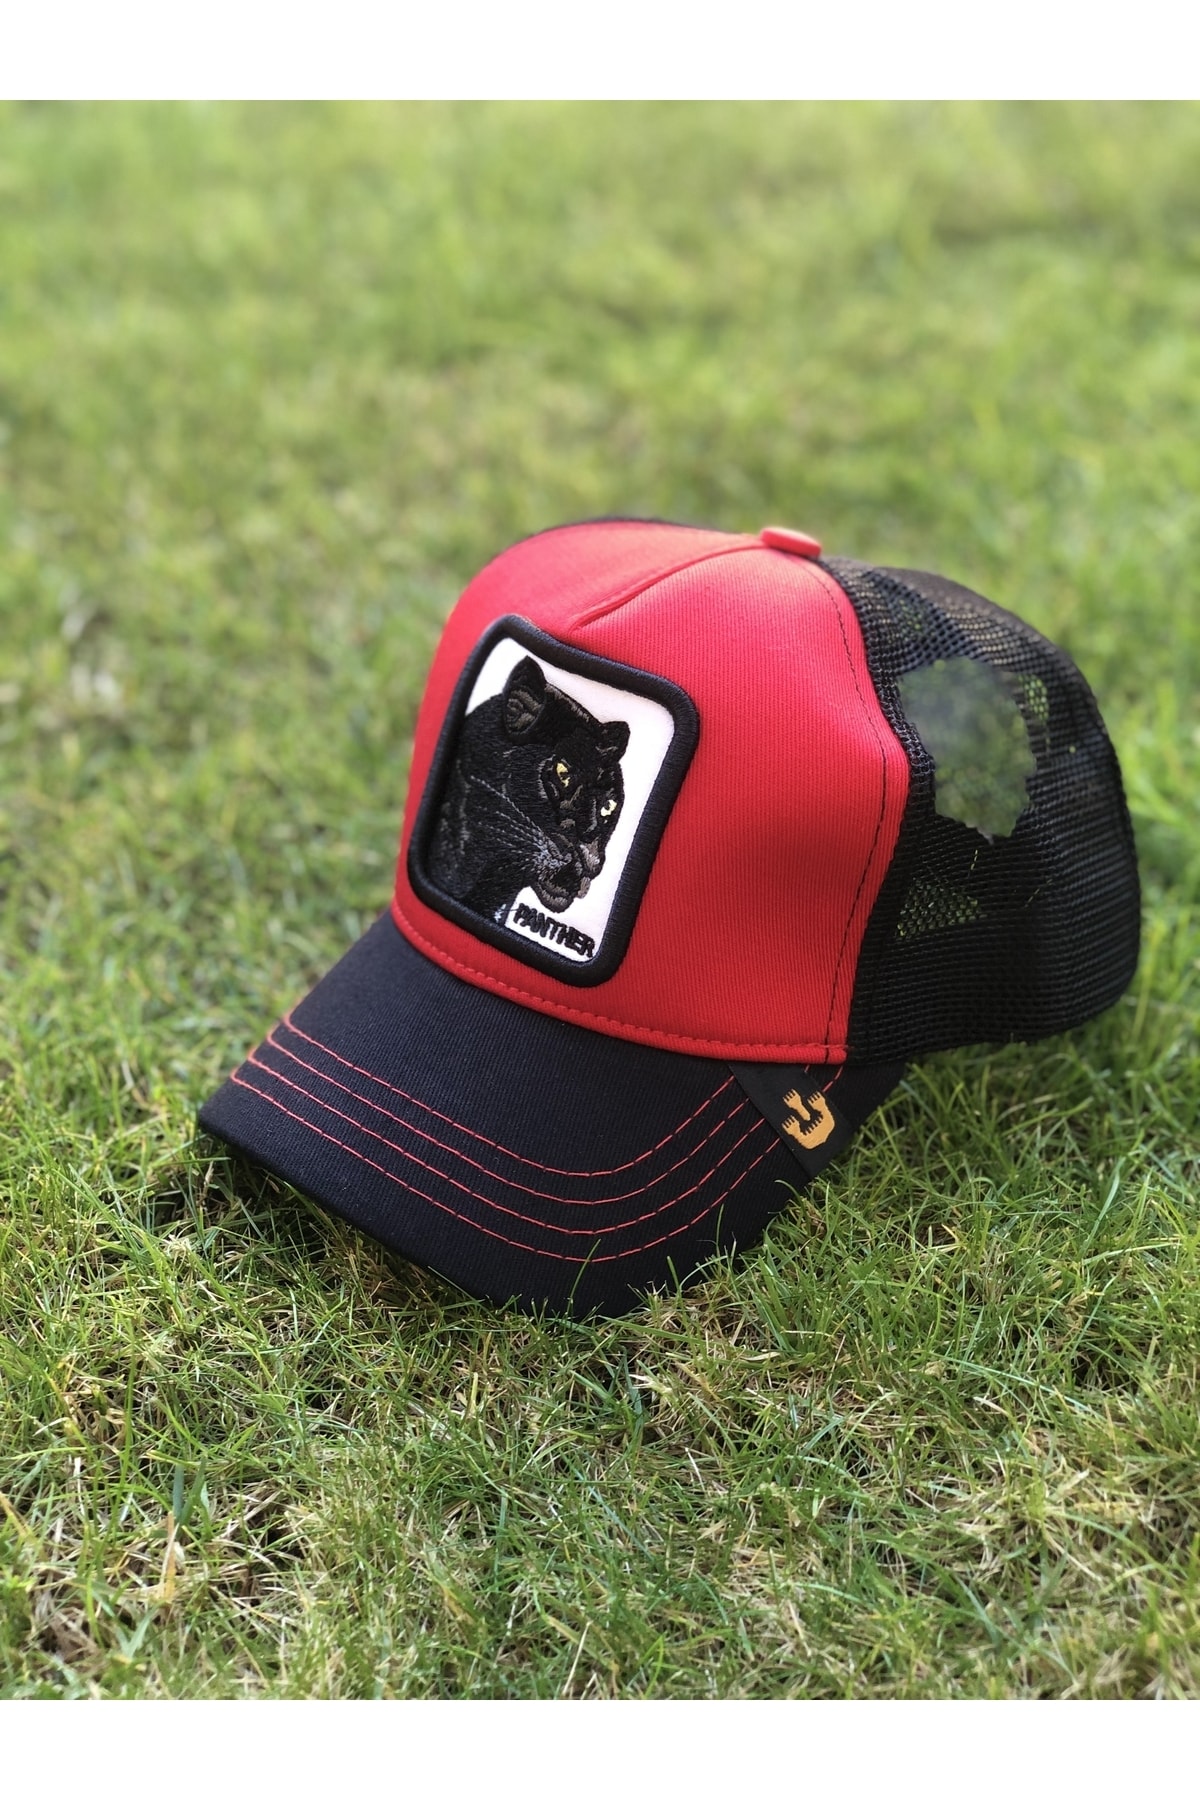 hamze Gorin Bros Hayvanlı / Hayvan Panter Figürlü Siyah Kırmızı Fileli Cap Şapka